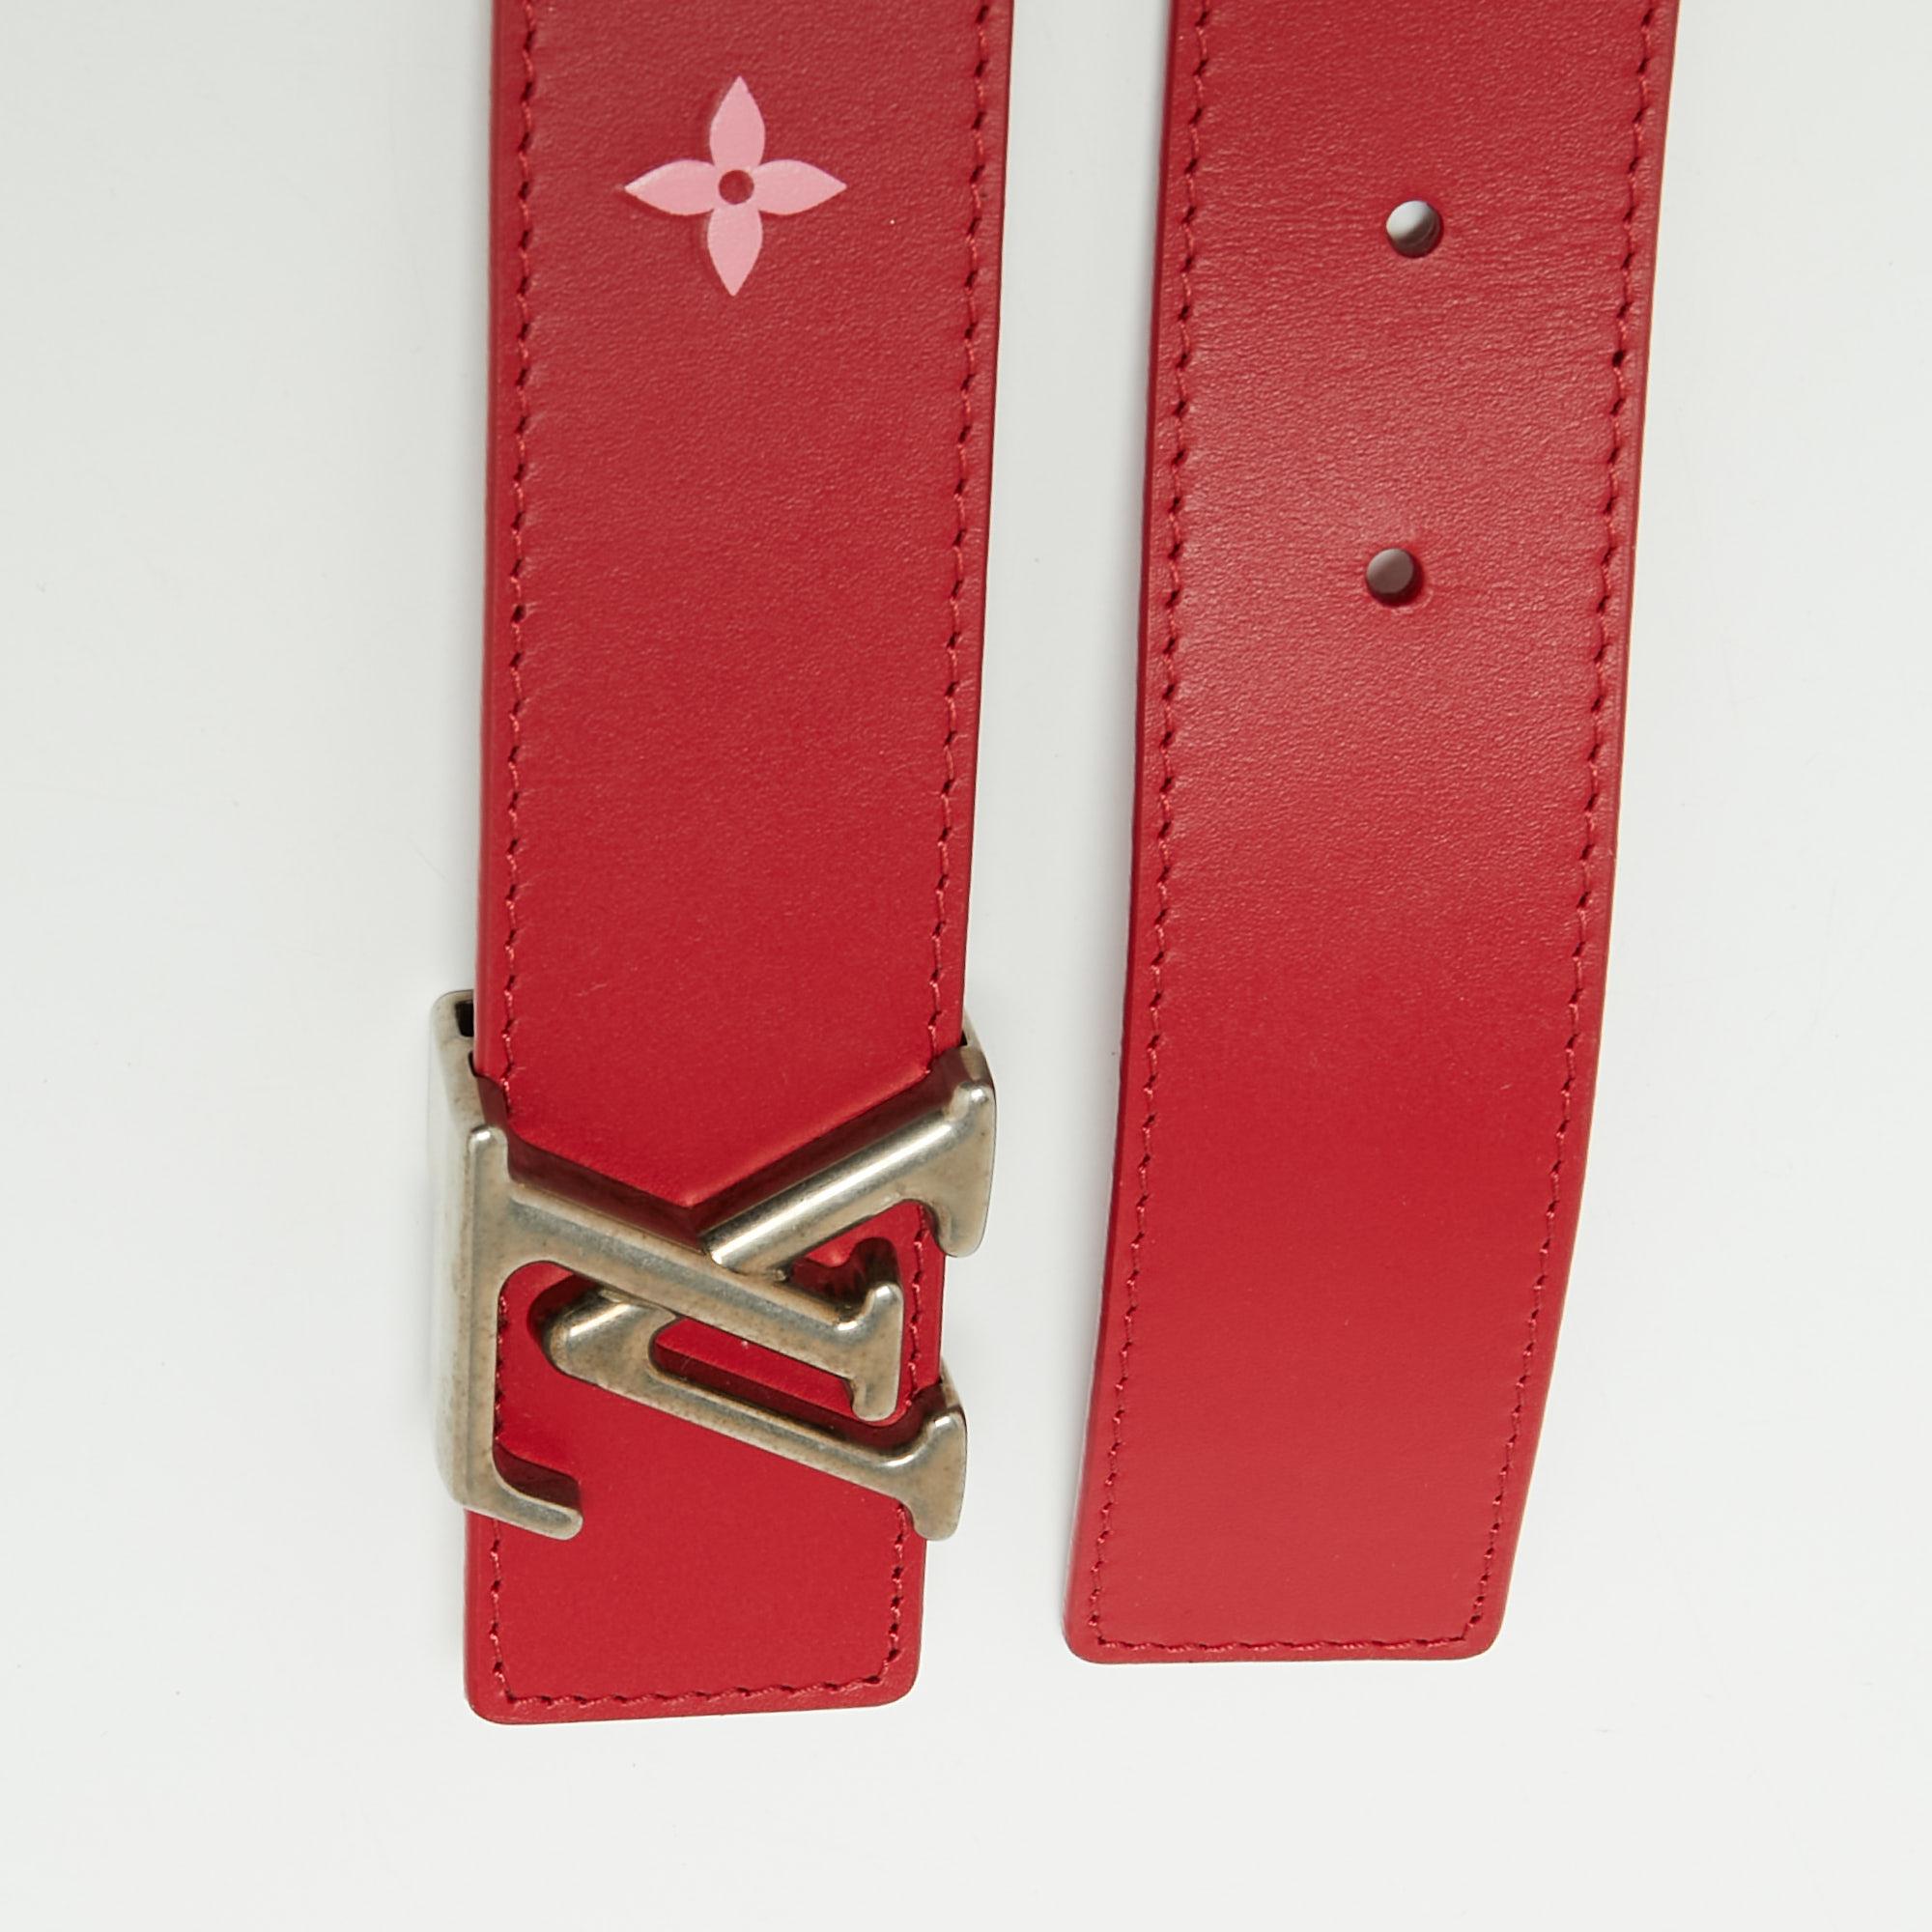 Dieser Gürtel aus dem Hause Louis Vuitton wird Ihre Kleidung auf jeden Fall aufwerten. Sie ist aus rotem Leder gefertigt, das auf der Vorderseite mit einem silberfarbenen LV-Logo verziert ist. Dieser Gürtel hat eine Länge von 85 cm und eine robuste